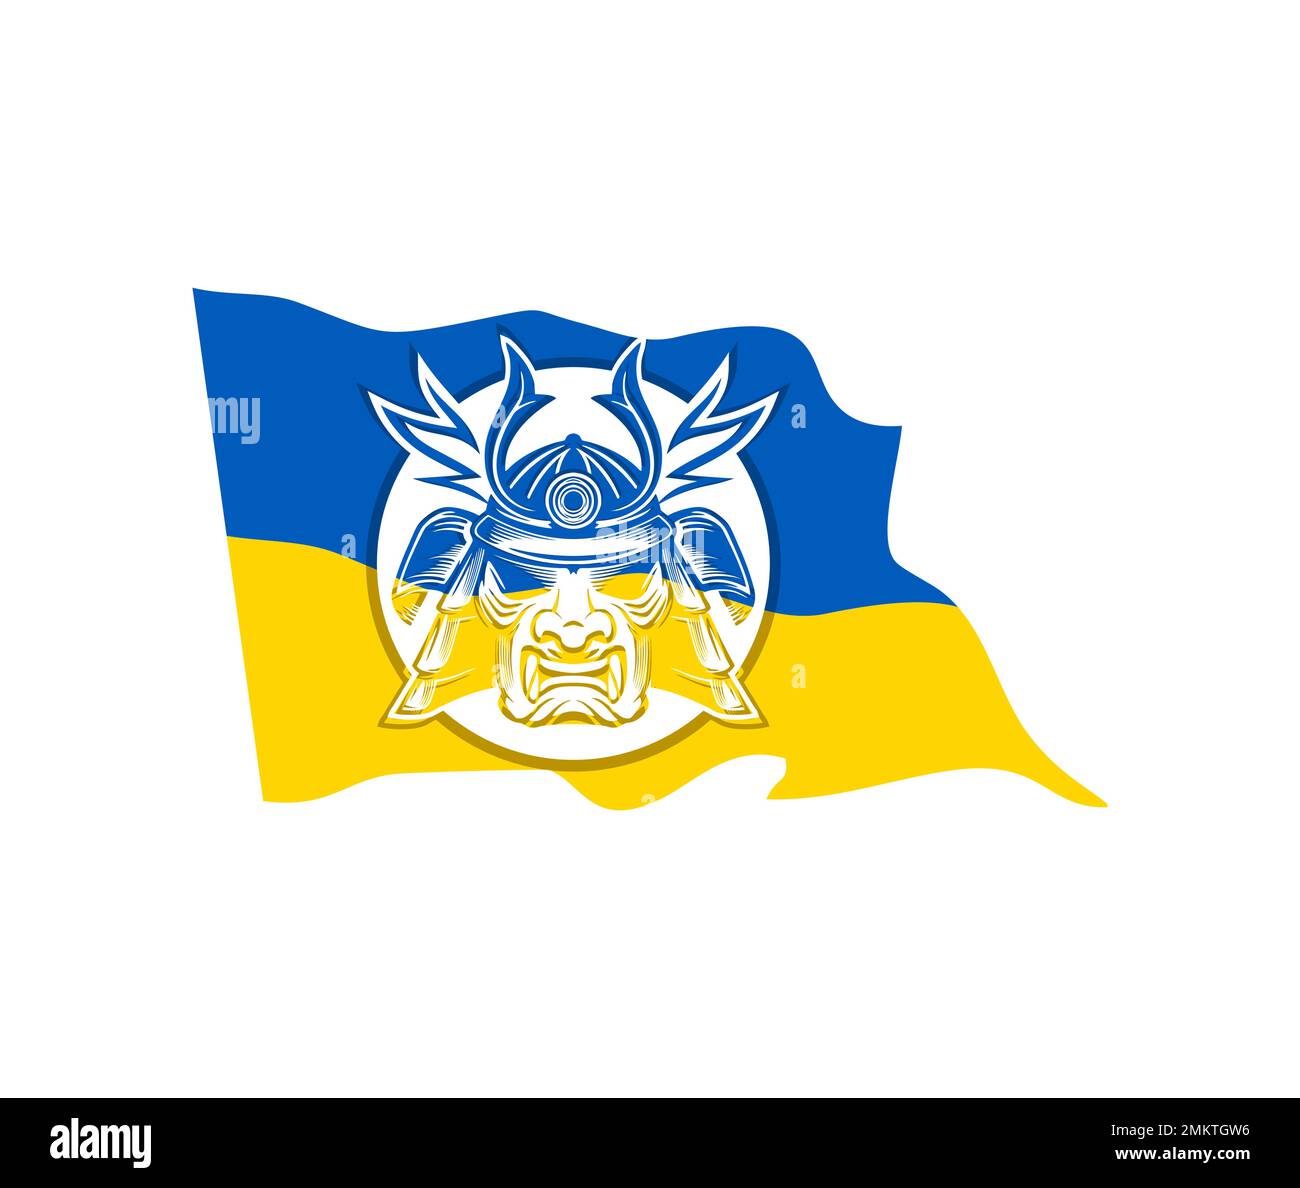 Vettore illustratio di Shogun Knight, Stand con segno di bandiera Ucraina Illustrazione Vettoriale